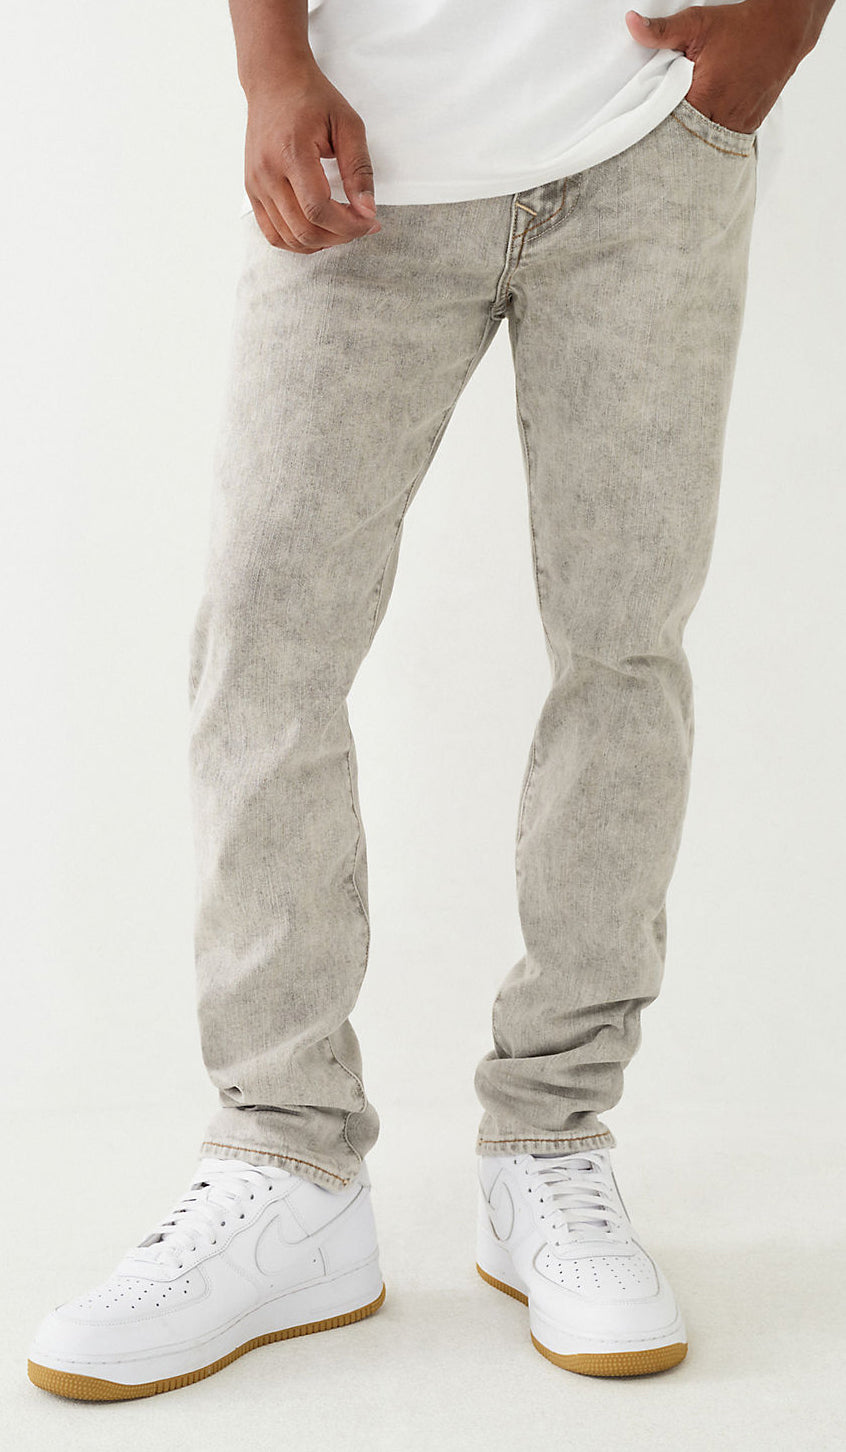 True Religion Men's Rocco Jeans in Gallatin Grey Wash 107074 ICUG